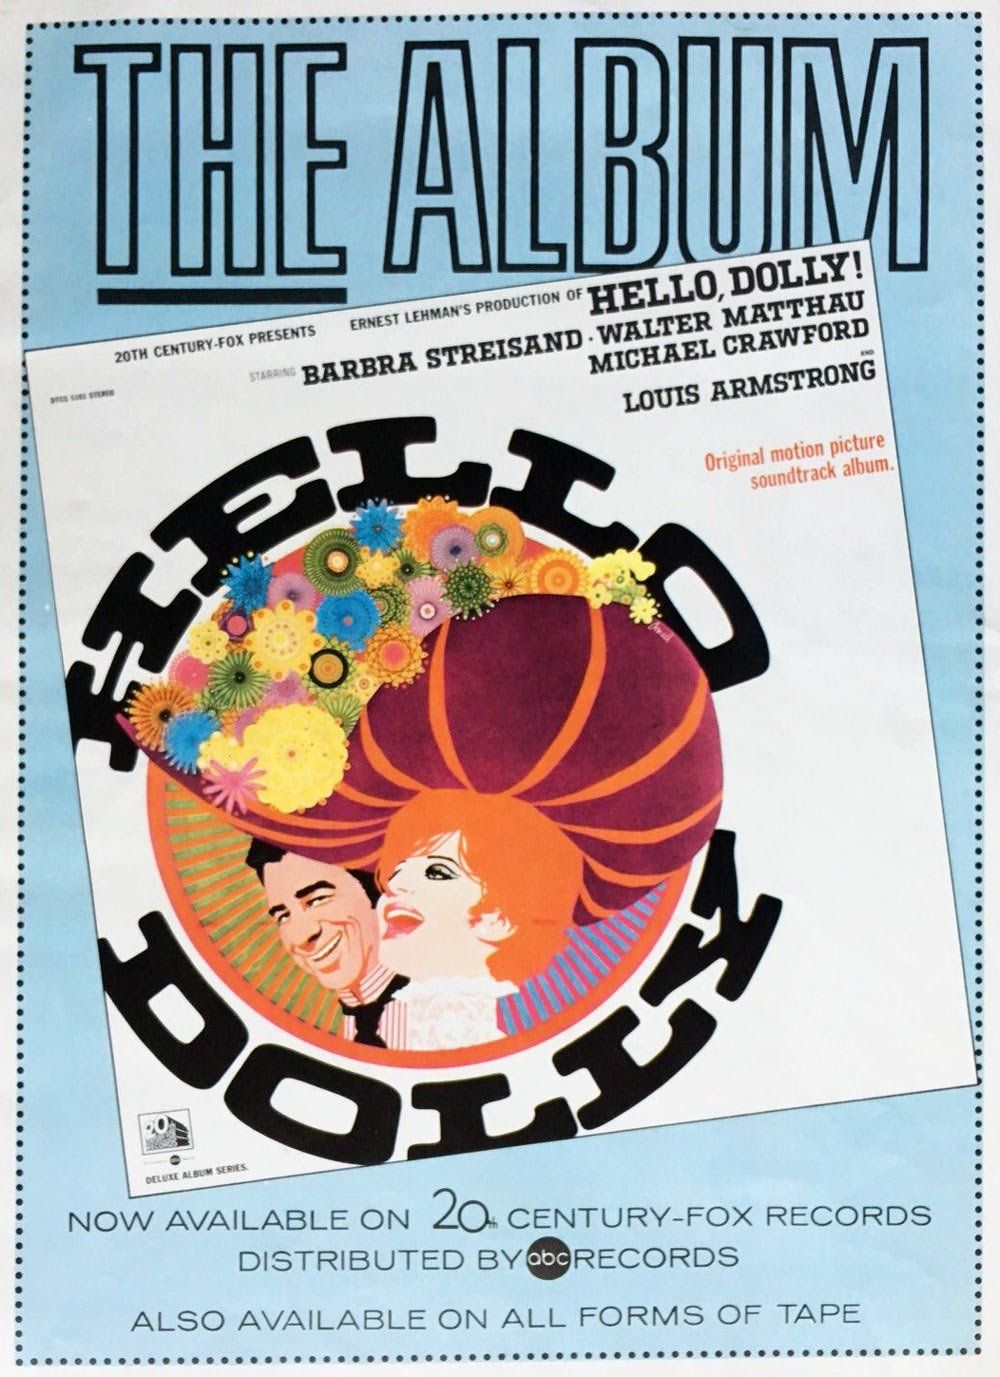 Original ad for the Hello Dolly album in 1969